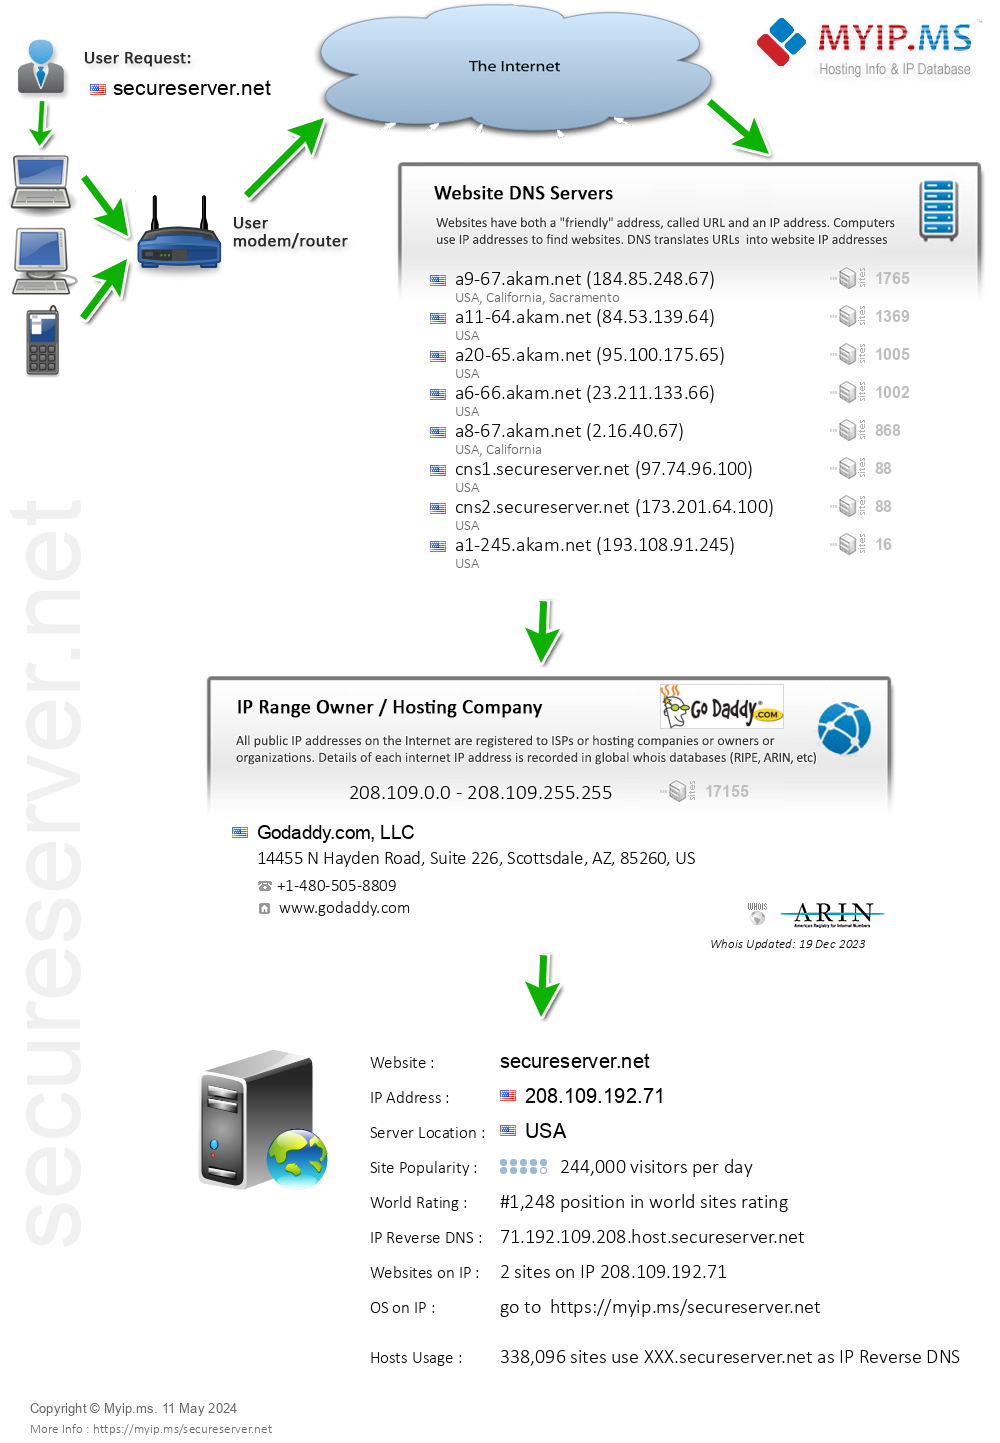 Secureserver.net - Website Hosting Visual IP Diagram